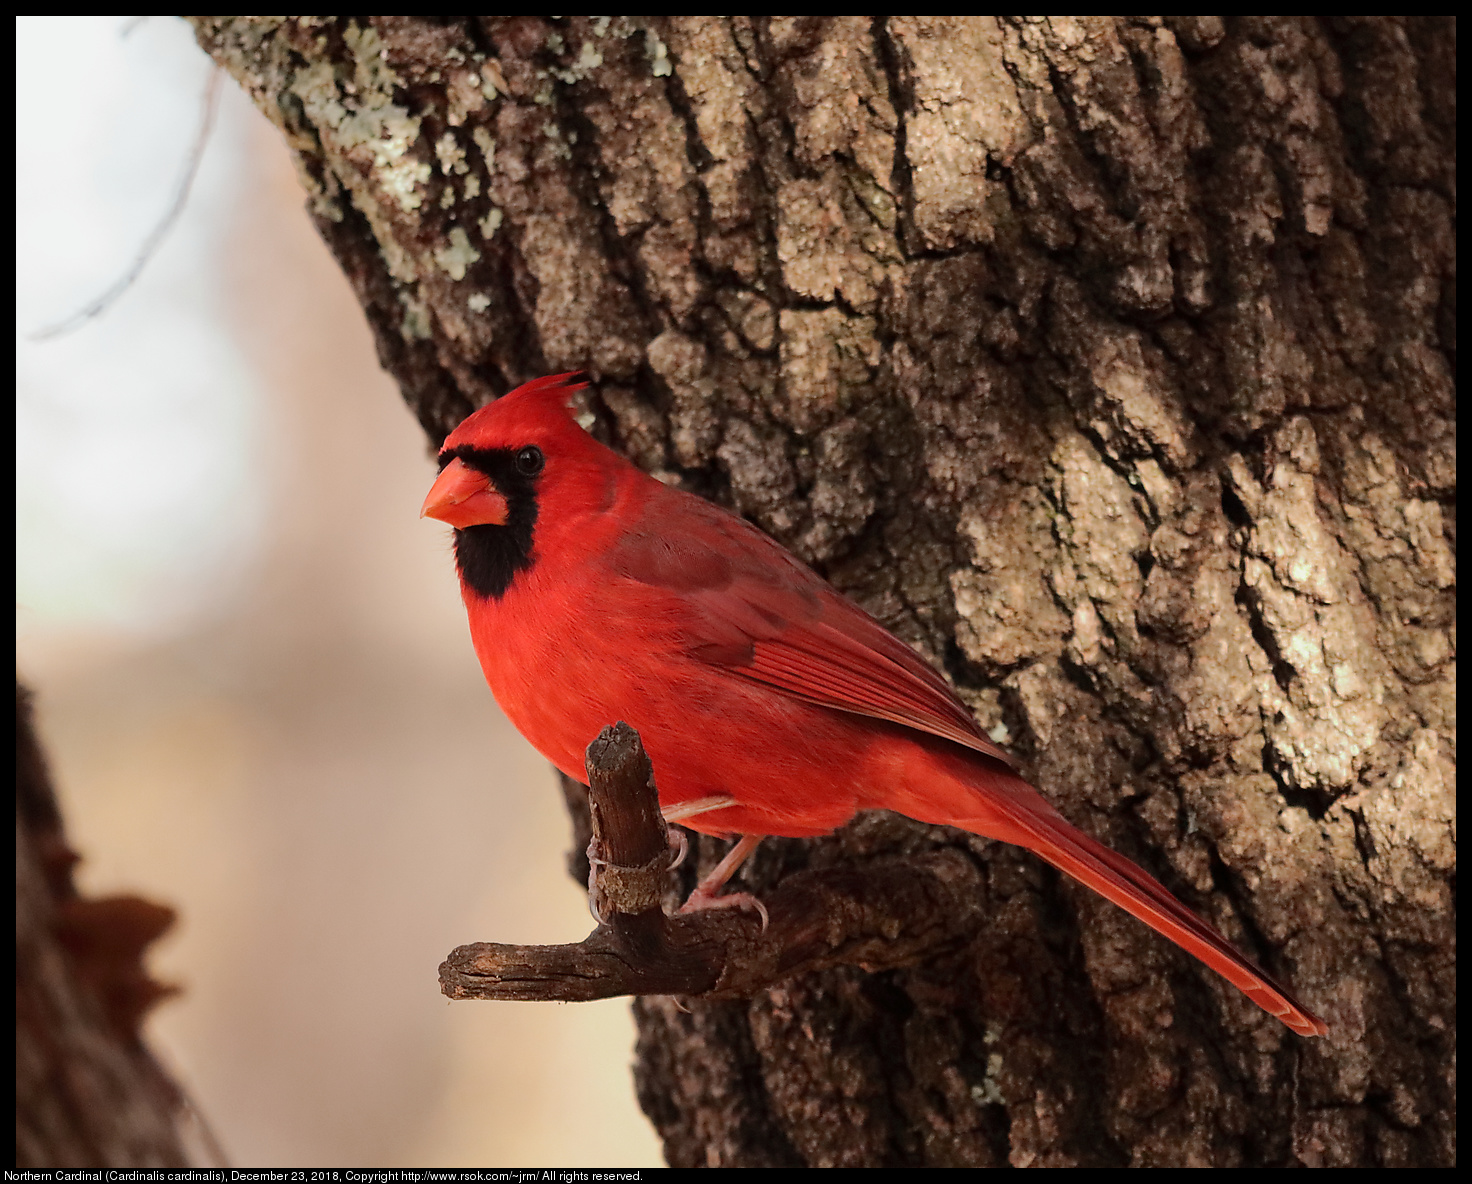 Northern Cardinal (Cardinalis cardinalis), December 23, 2018